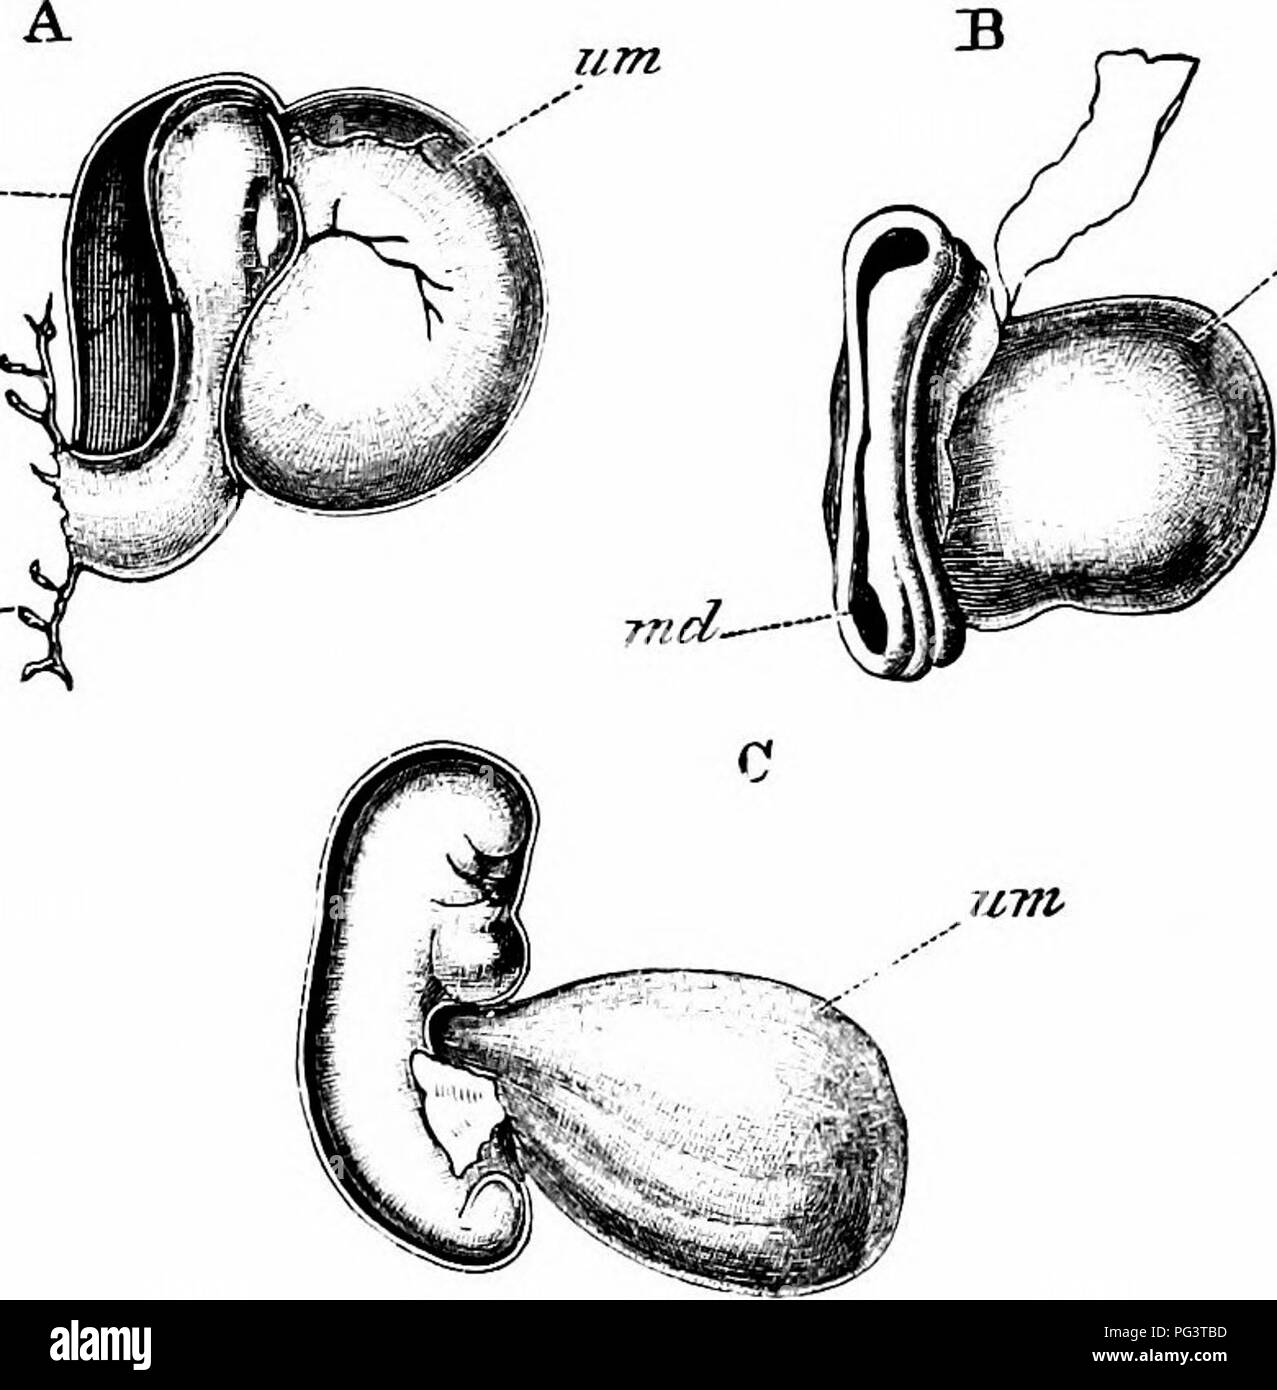 . Les éléments d'embryologie . L'embryologie. X.] L'embryon humain. La FIA. 110. 337 air/i fi^-- Eaelt. zem trois des embryons humains. (Copié à partir de son.) A. Vue latérale d'un embryon précoce décrit par son. B. embryon d'environ 12-14 jours décrite par AUen Thom- son. C. jeune embryon décrit par son. suis. amnios ; md. groove médullaire ; wn. vésicule ombilicale ; ch. chorion, à laquelle l'embryon est fixé par un pédoncule. et du jaune-sac rempli mais une très petite partie de l'ensemble de la cavité de la vésicule. L'embryon, qui n'a probablement pas tout à fait normales (Fig. 110 A), a été très imparfaitement développé ; une me- dullary plaque était ha Banque D'Images